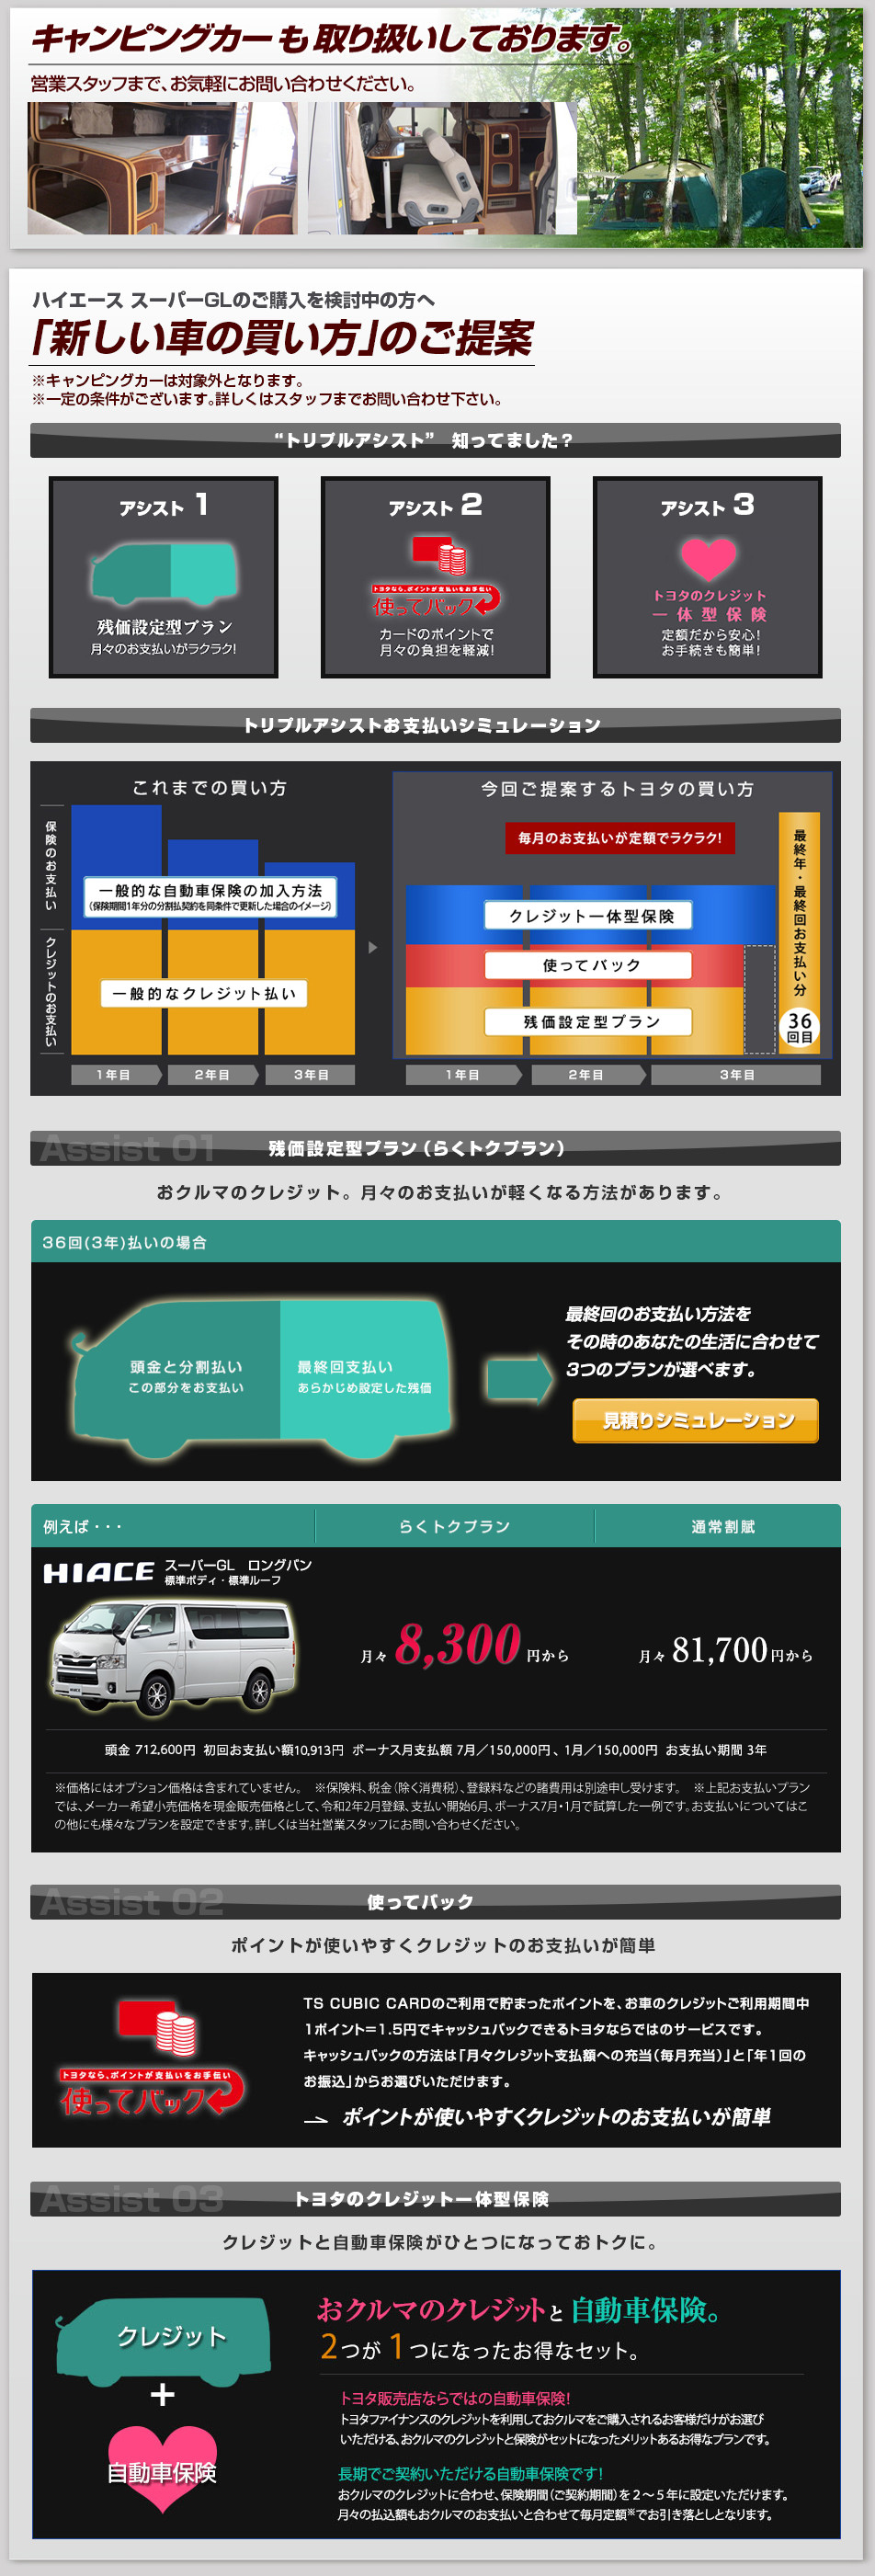 トヨタ ハイエース スーパーgl 札幌トヨペットwebサイト